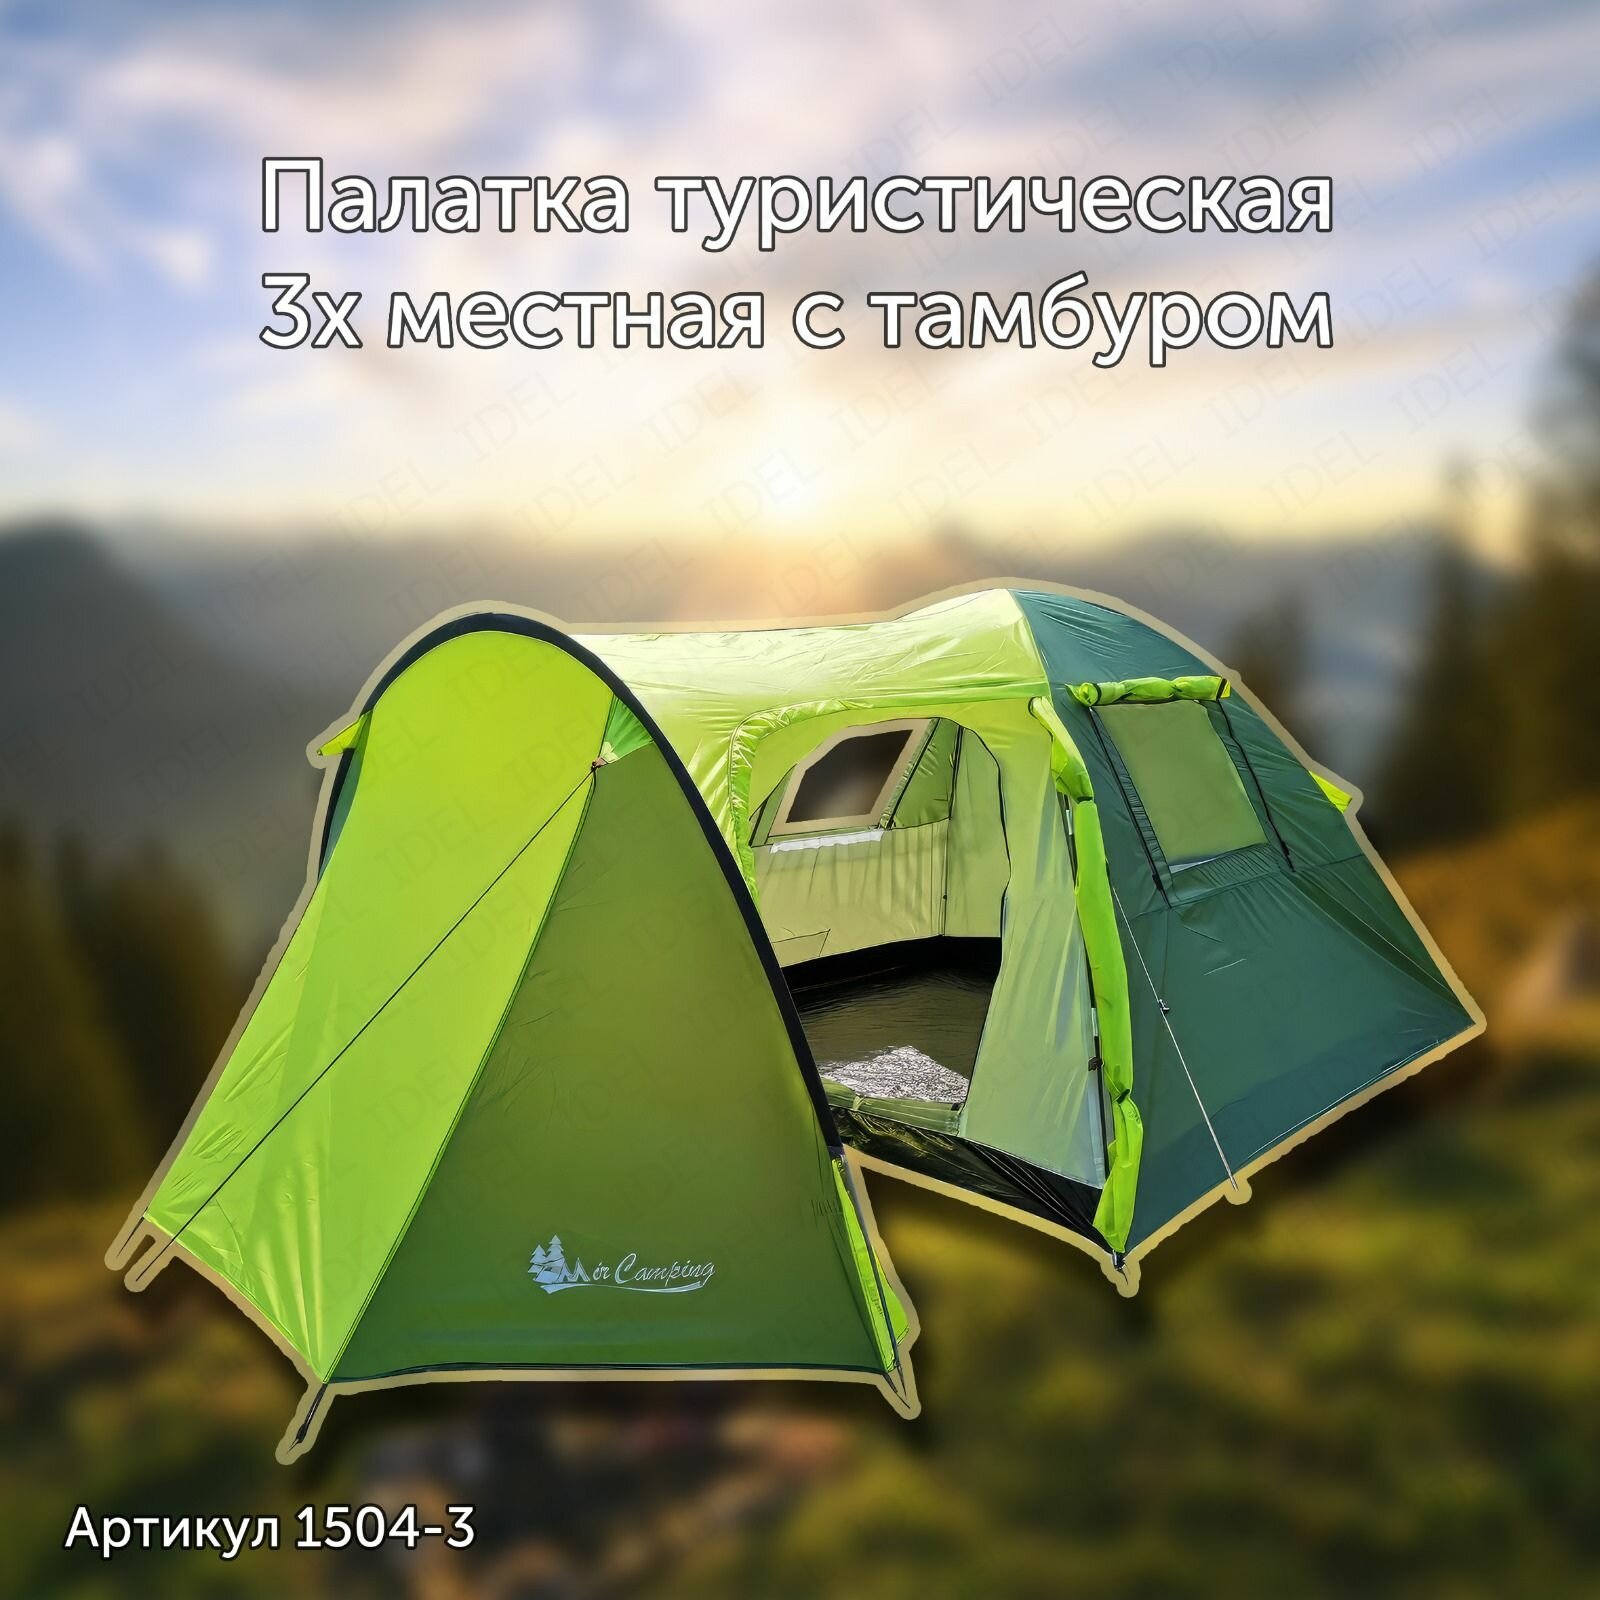 Палатка туристическая трехместная двухслойная с тамбуром MirCamping 1504-3